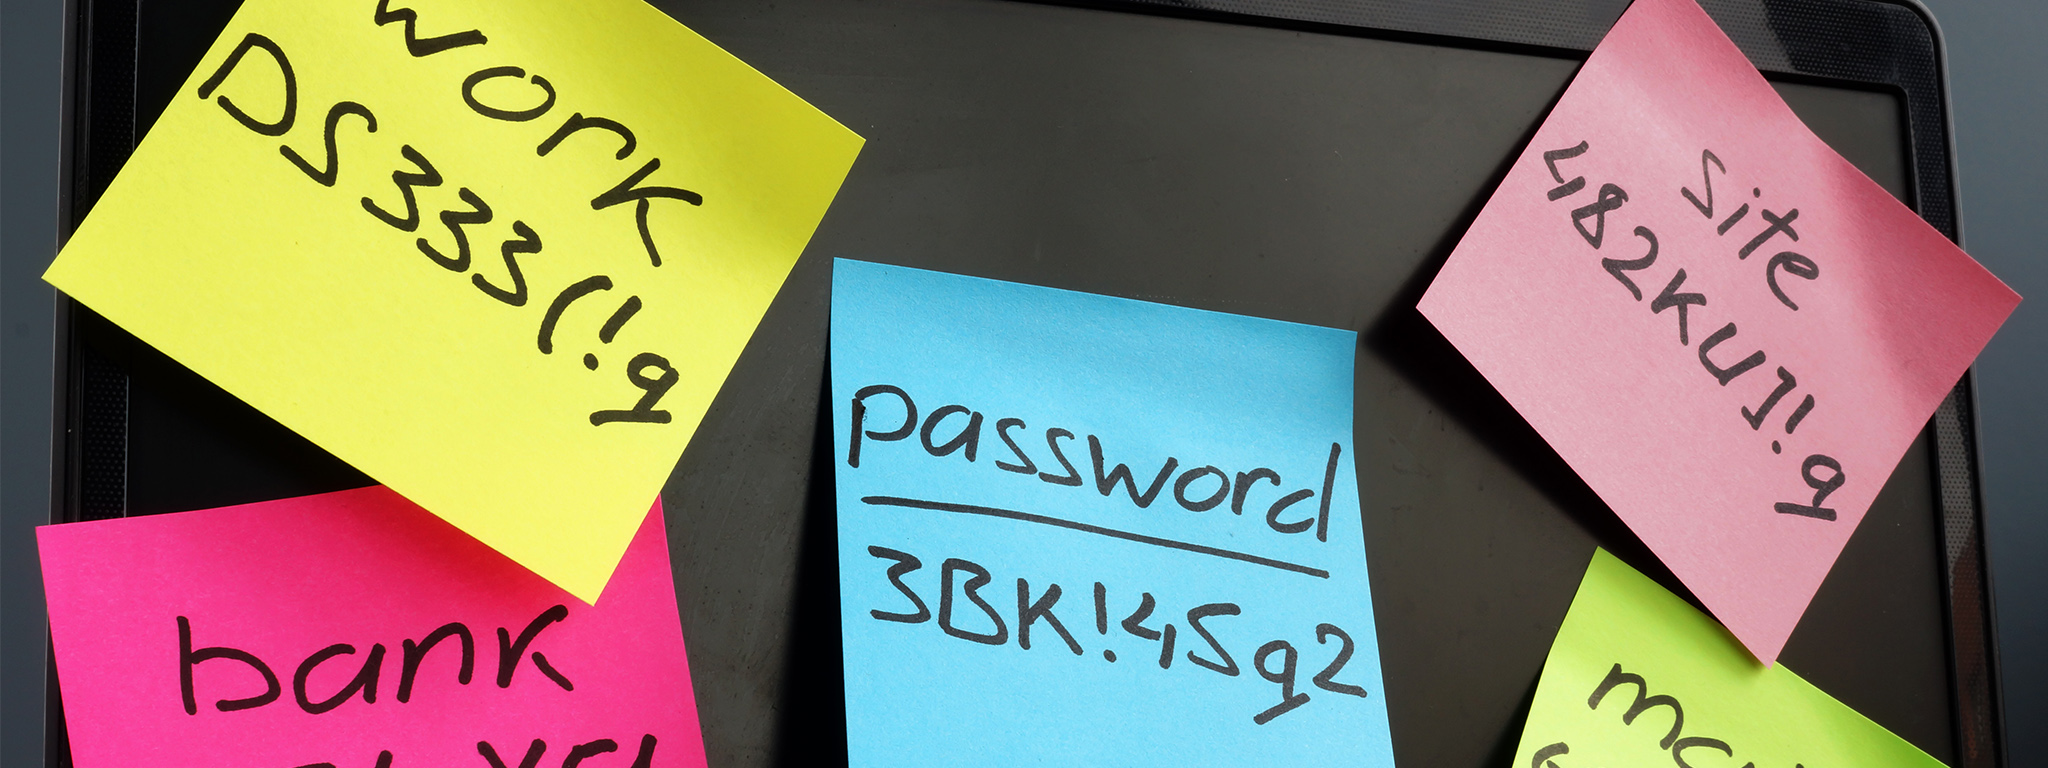 Gestione password. Laptop con note indicanti password complesse sullo schermo.